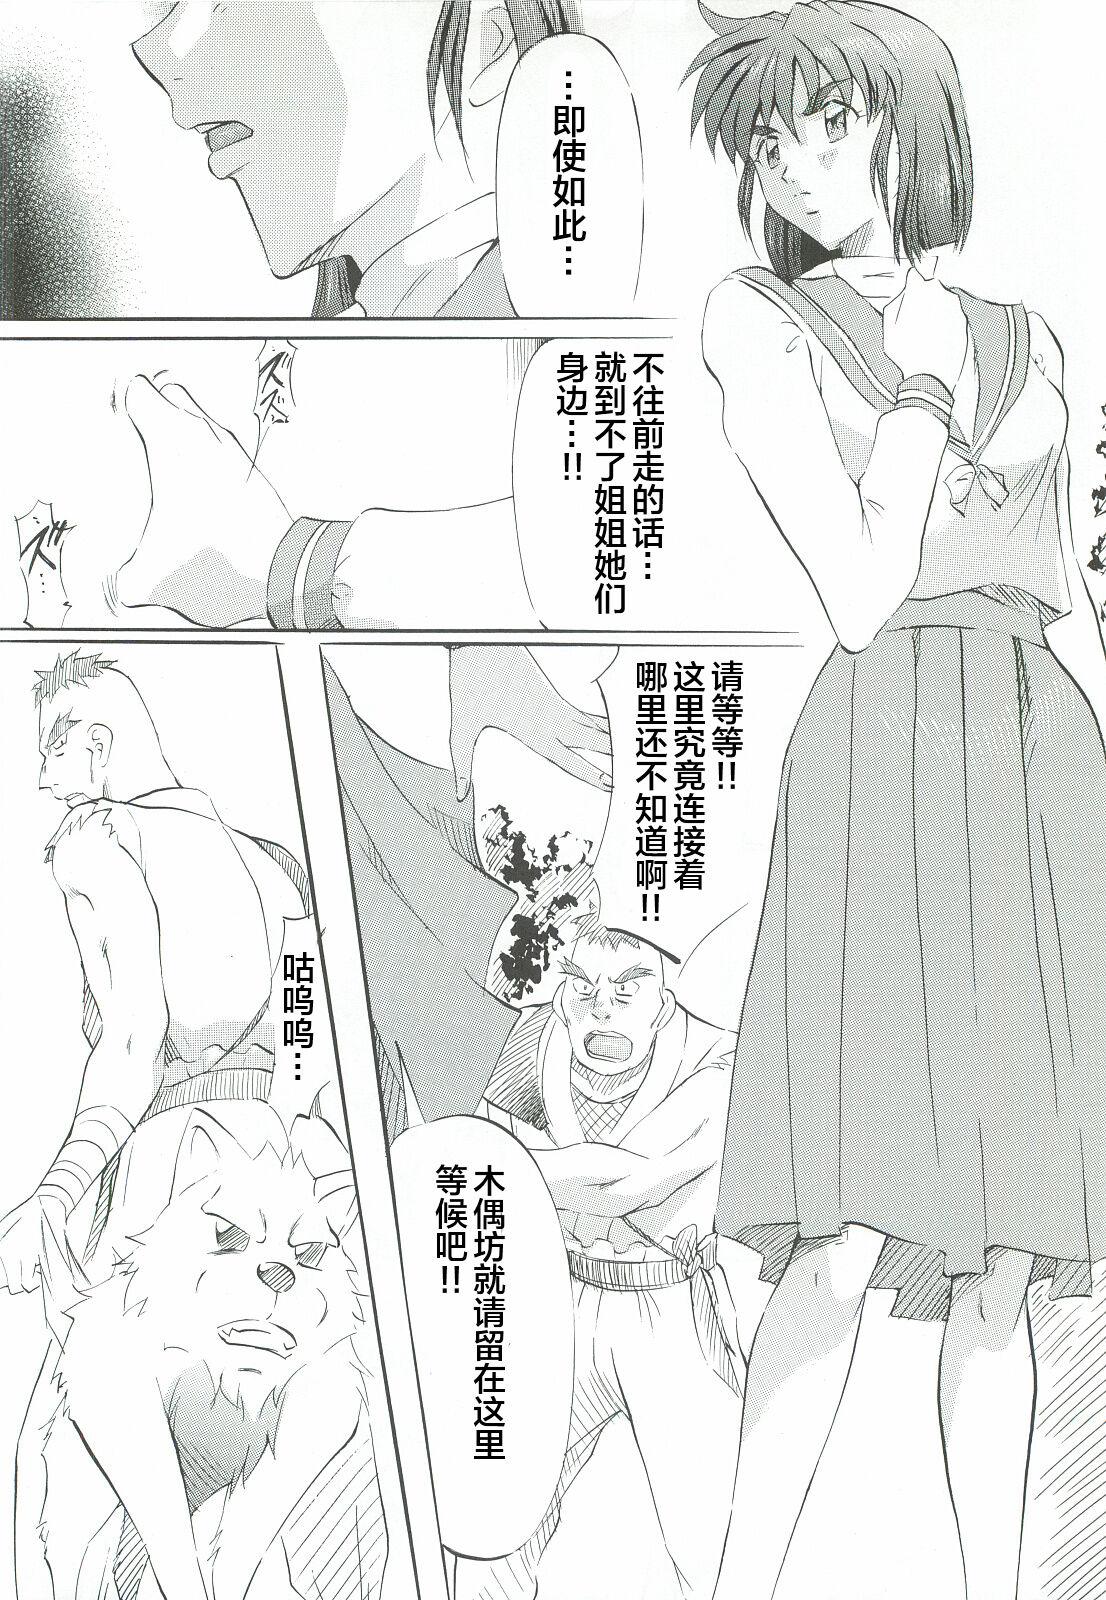 Topless Ai & Mai Gaiden - Kishin Fukkatsu no Shou - Twin angels | injuu seisen One - Page 7